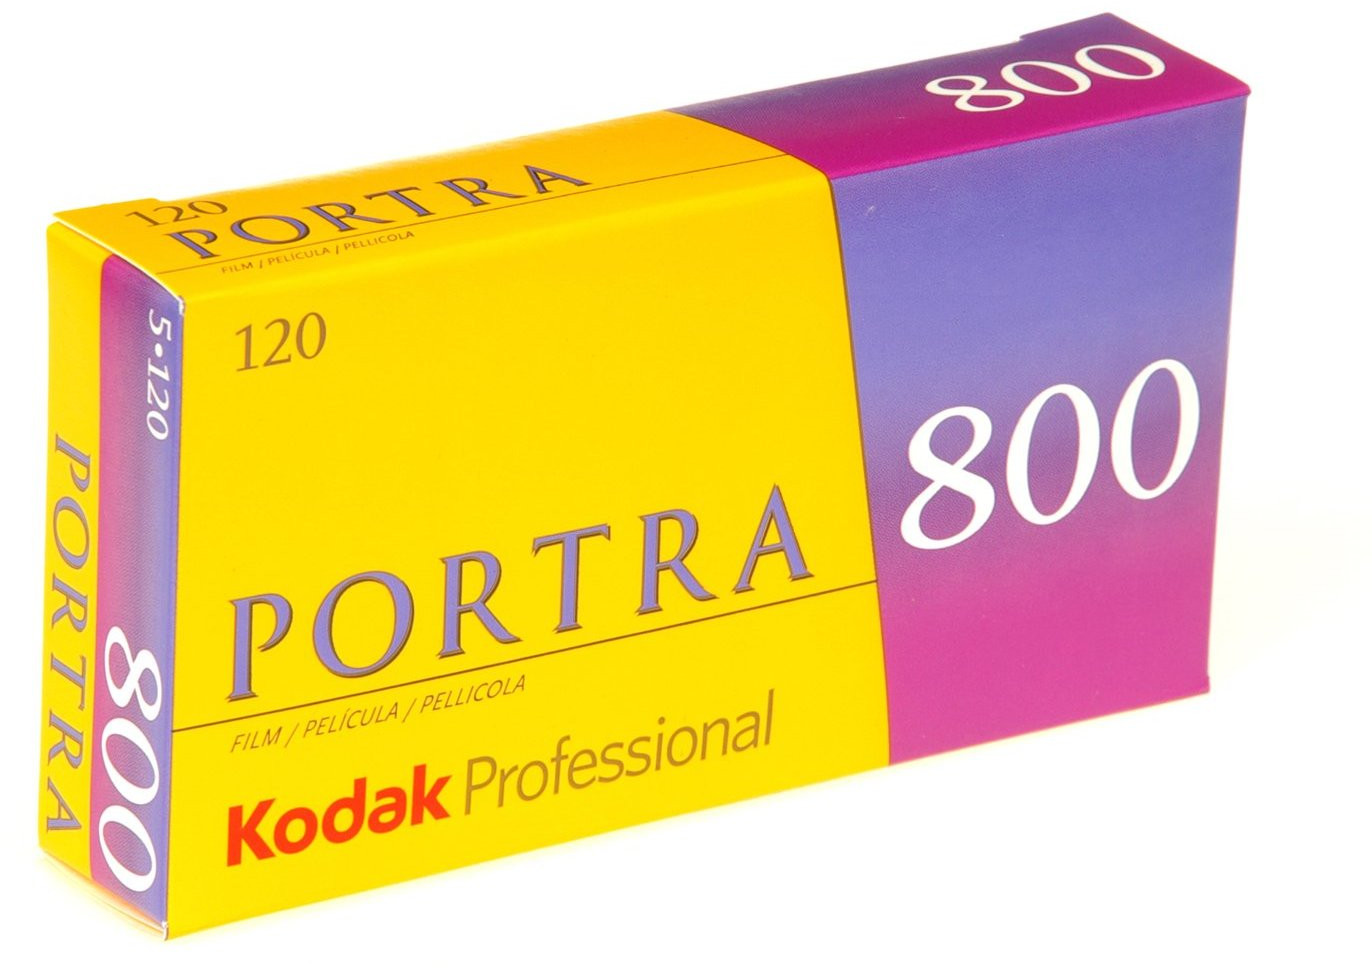 Kodak new Portra 800 120 Film (5)